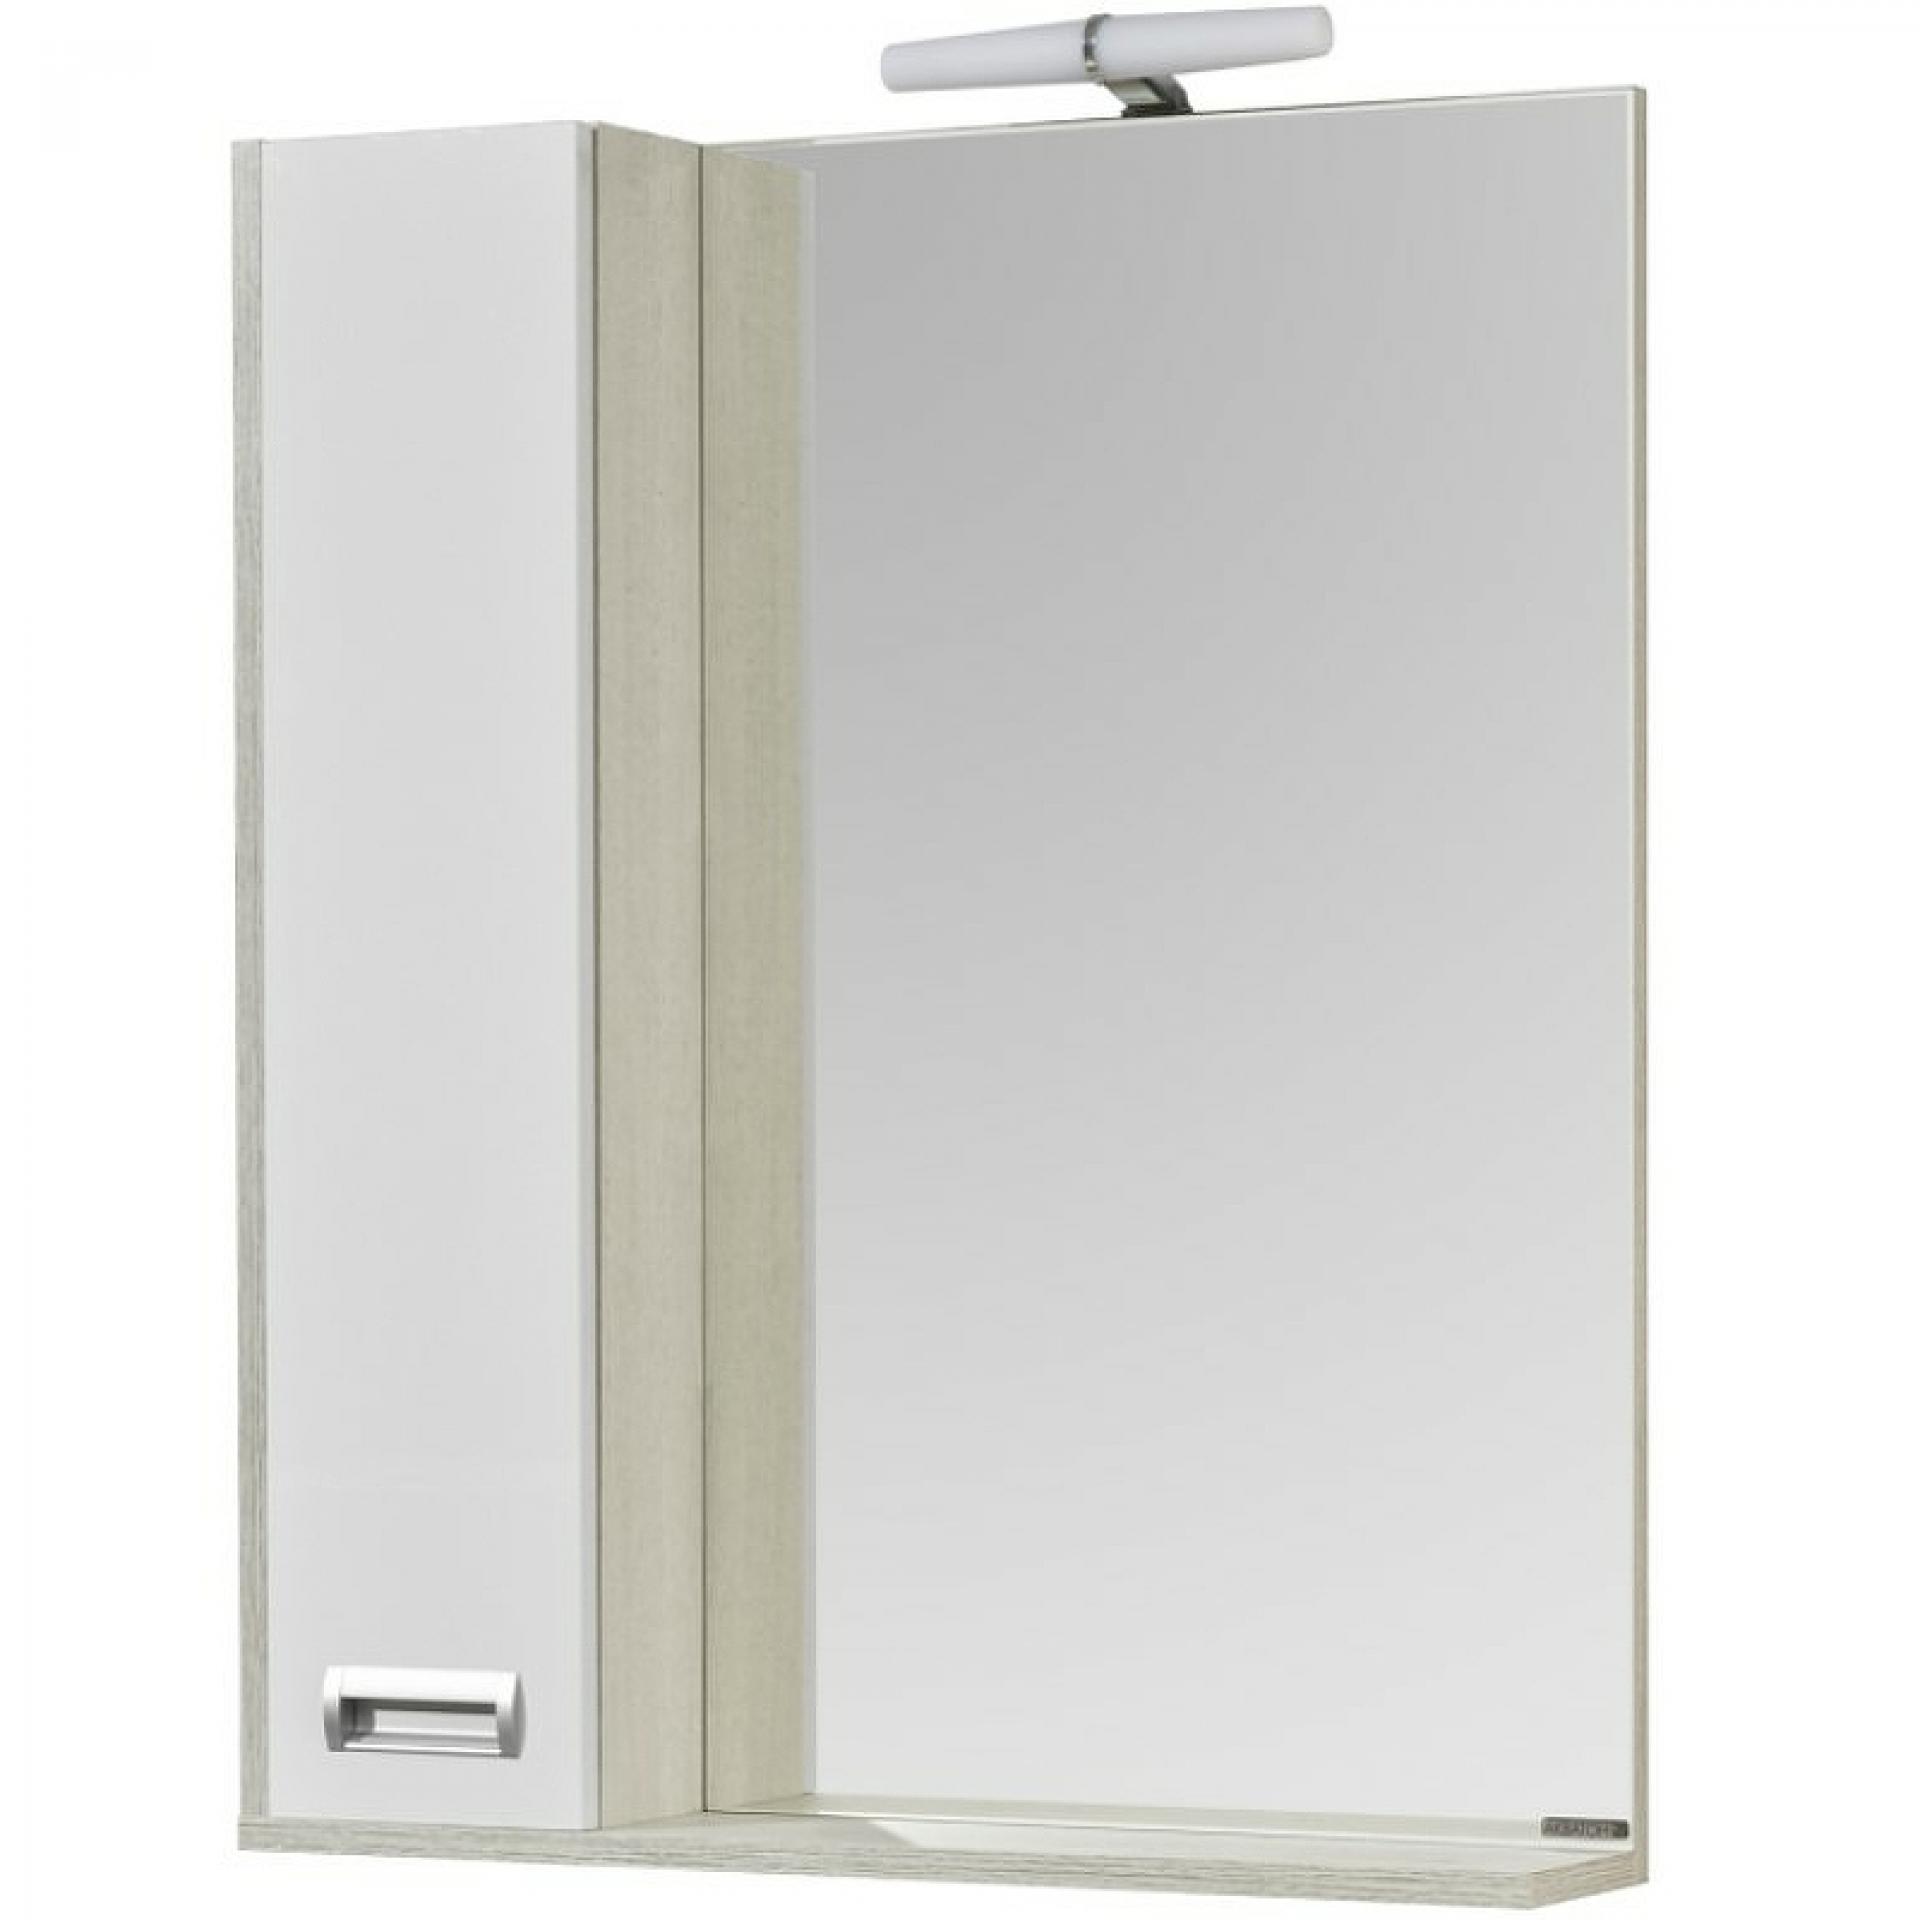 Зеркальный шкаф Акватон Бекка 70 1A214702BAC20 с подсветкой, белый/дуб сомерсет